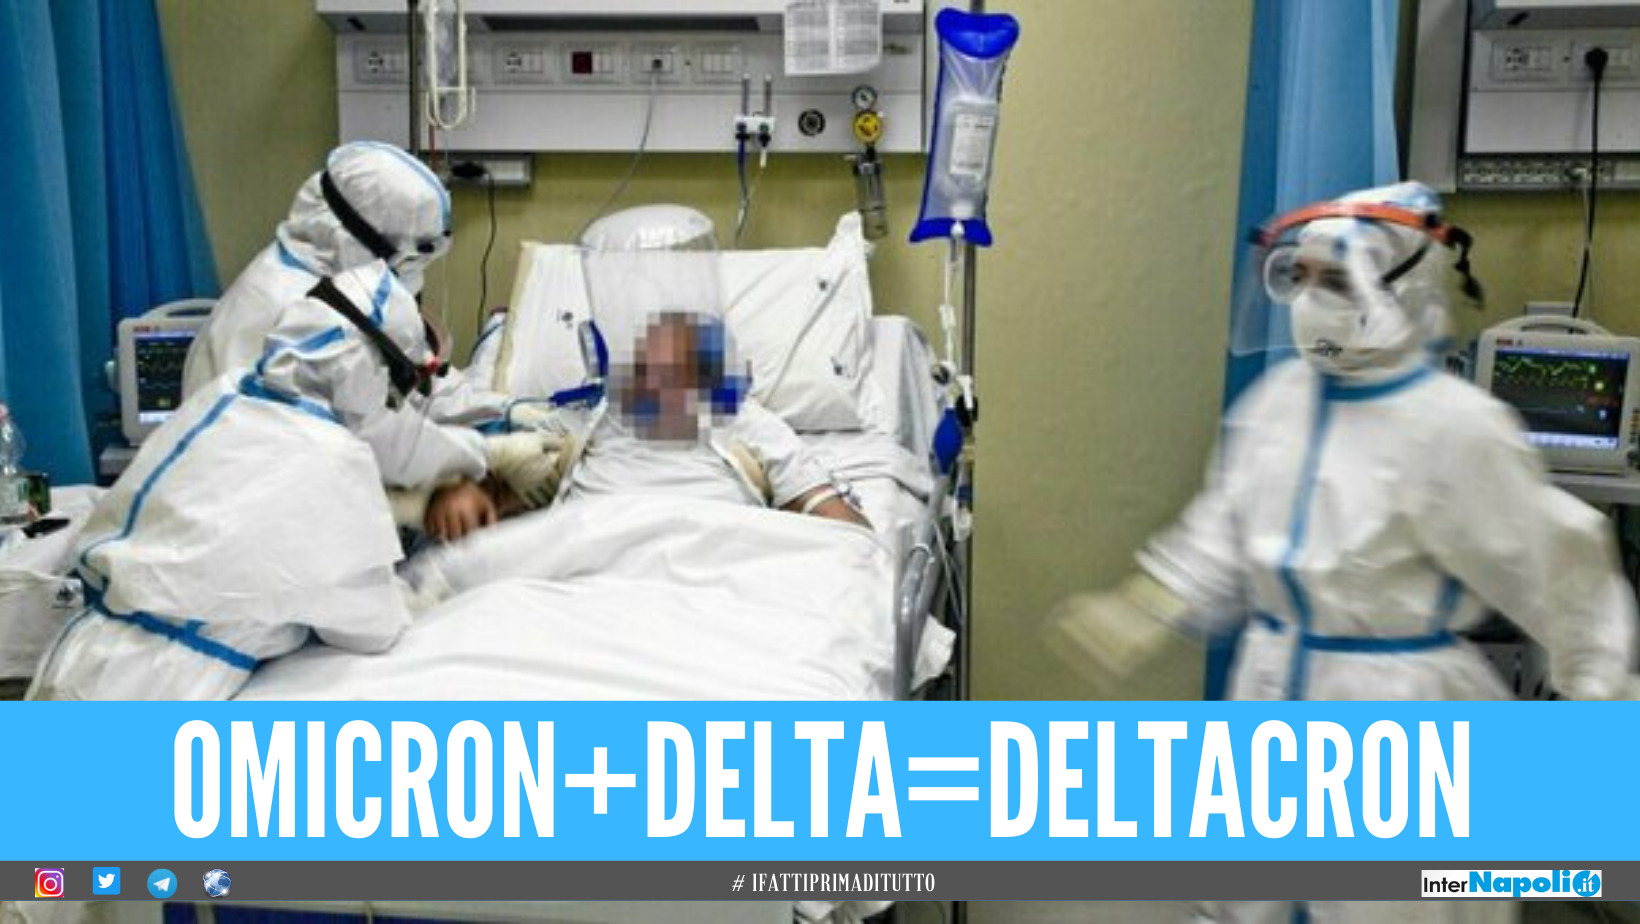 Deltacron